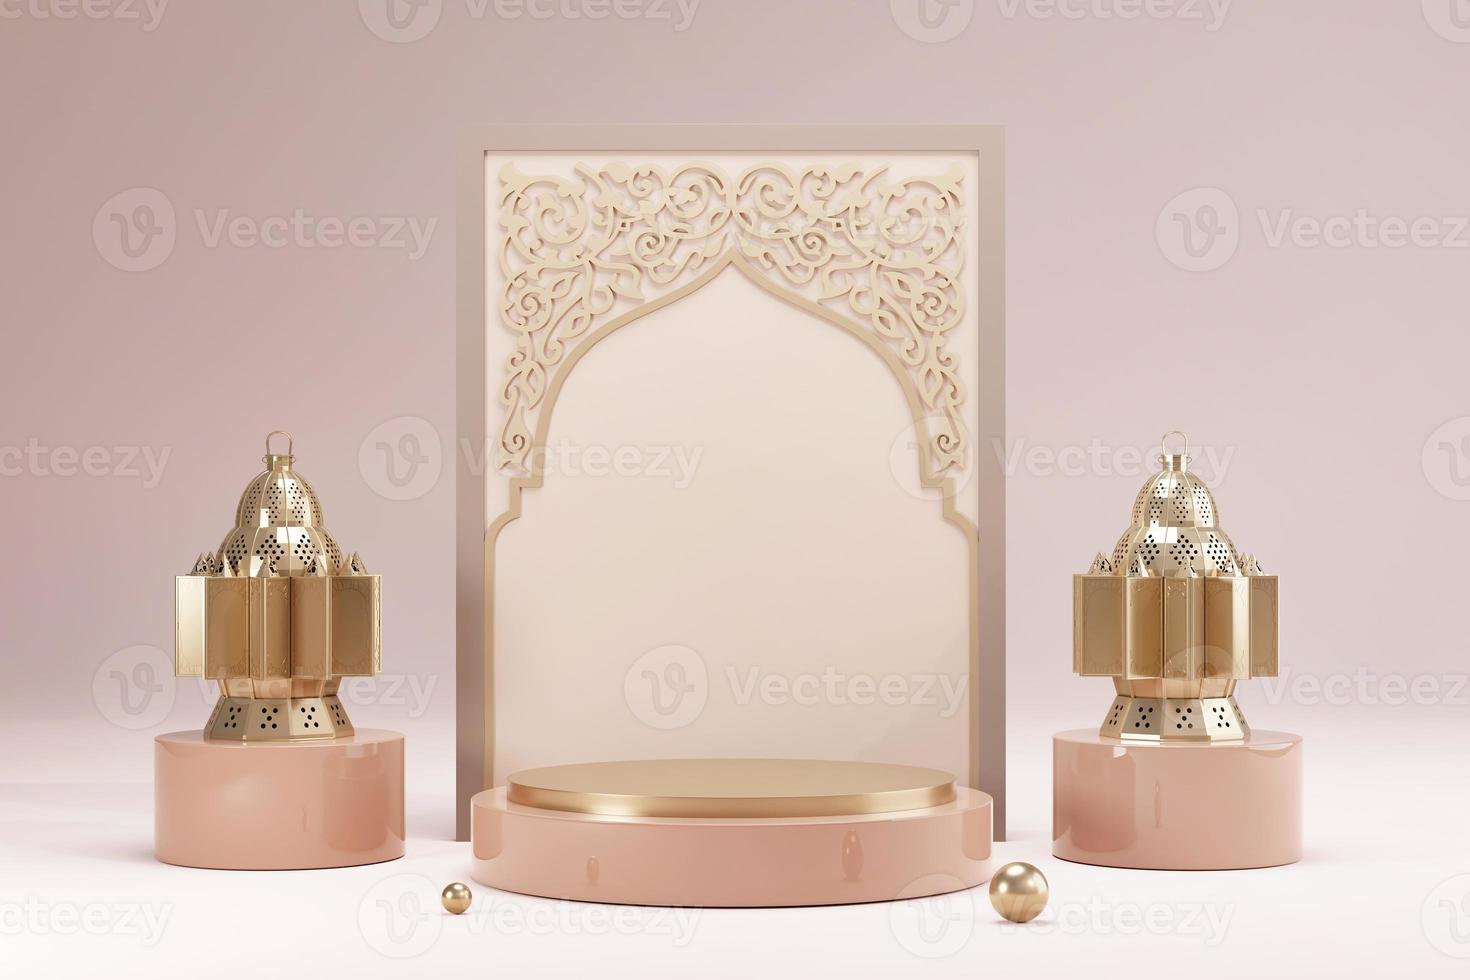 ramadan kareem islamisk hälsningsbakgrund med realistisk 3d gyllene halvmåne och lykta. kreativ design gratulationskort, banner, affisch. traditionell islamisk helgdag, 3D-rendering foto